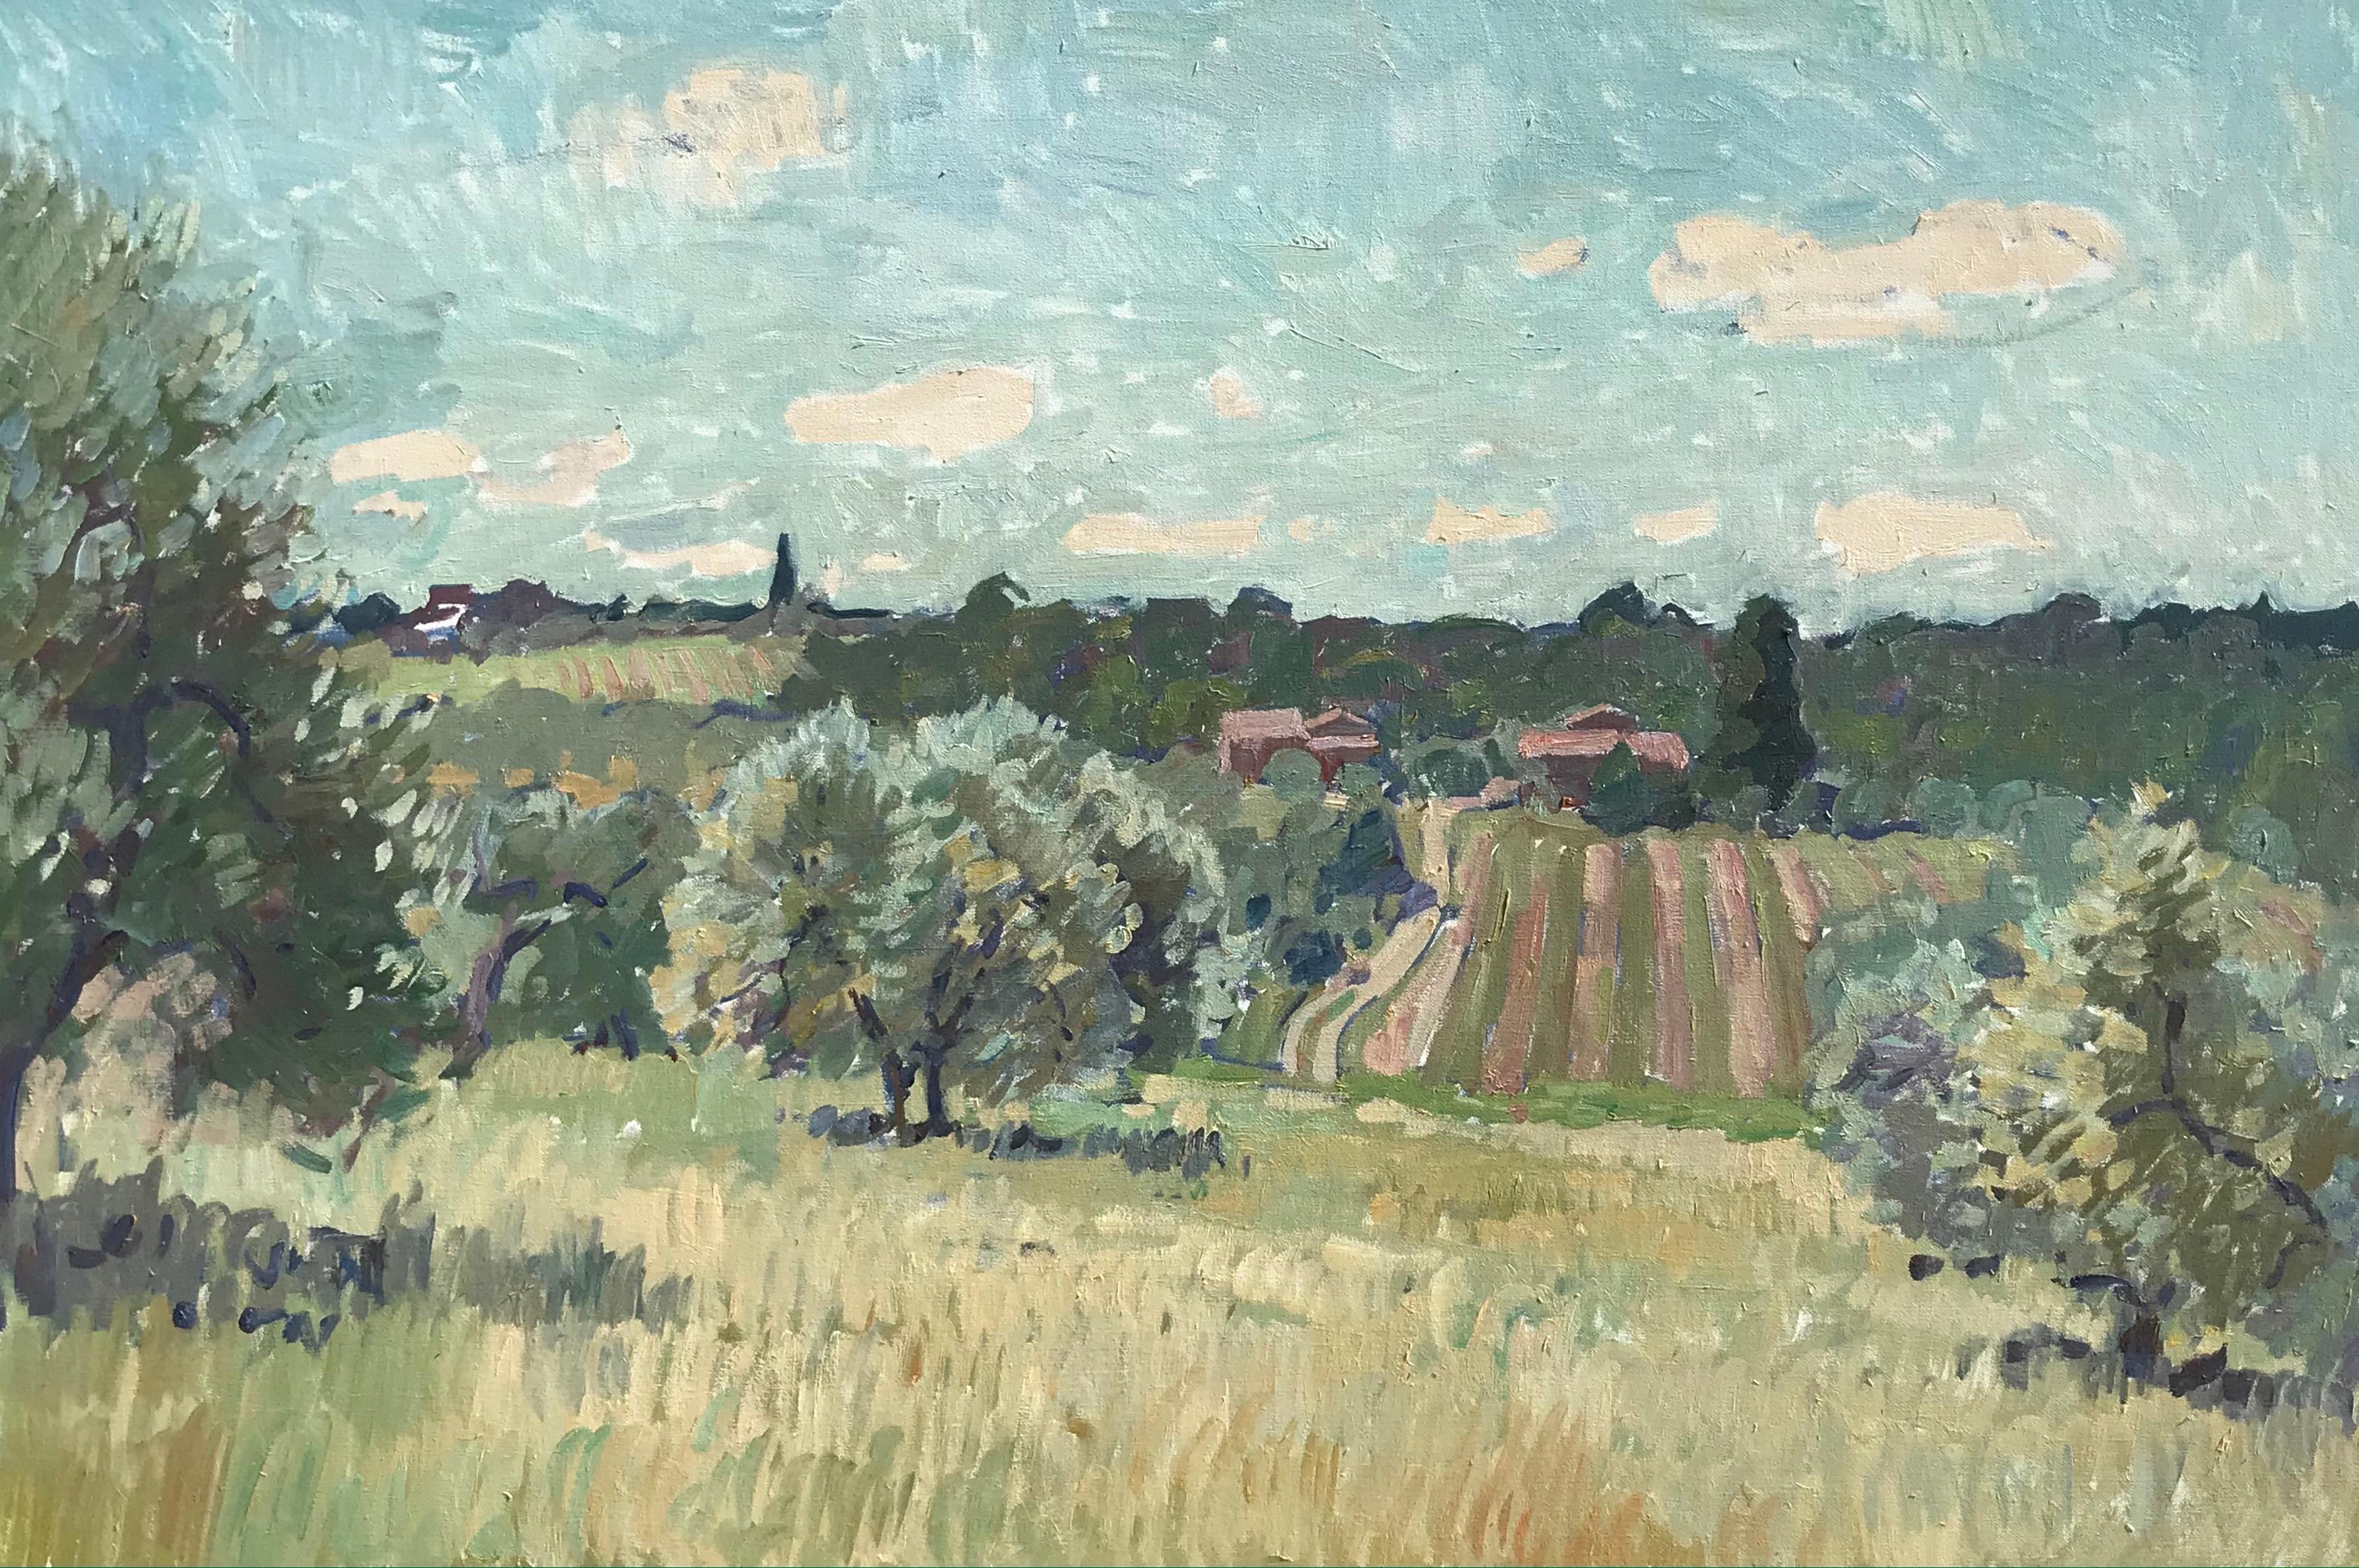 Ben Fenske Landscape Painting - "Flowering Olive Grove" impressionist view of Tuscan landscape in spring